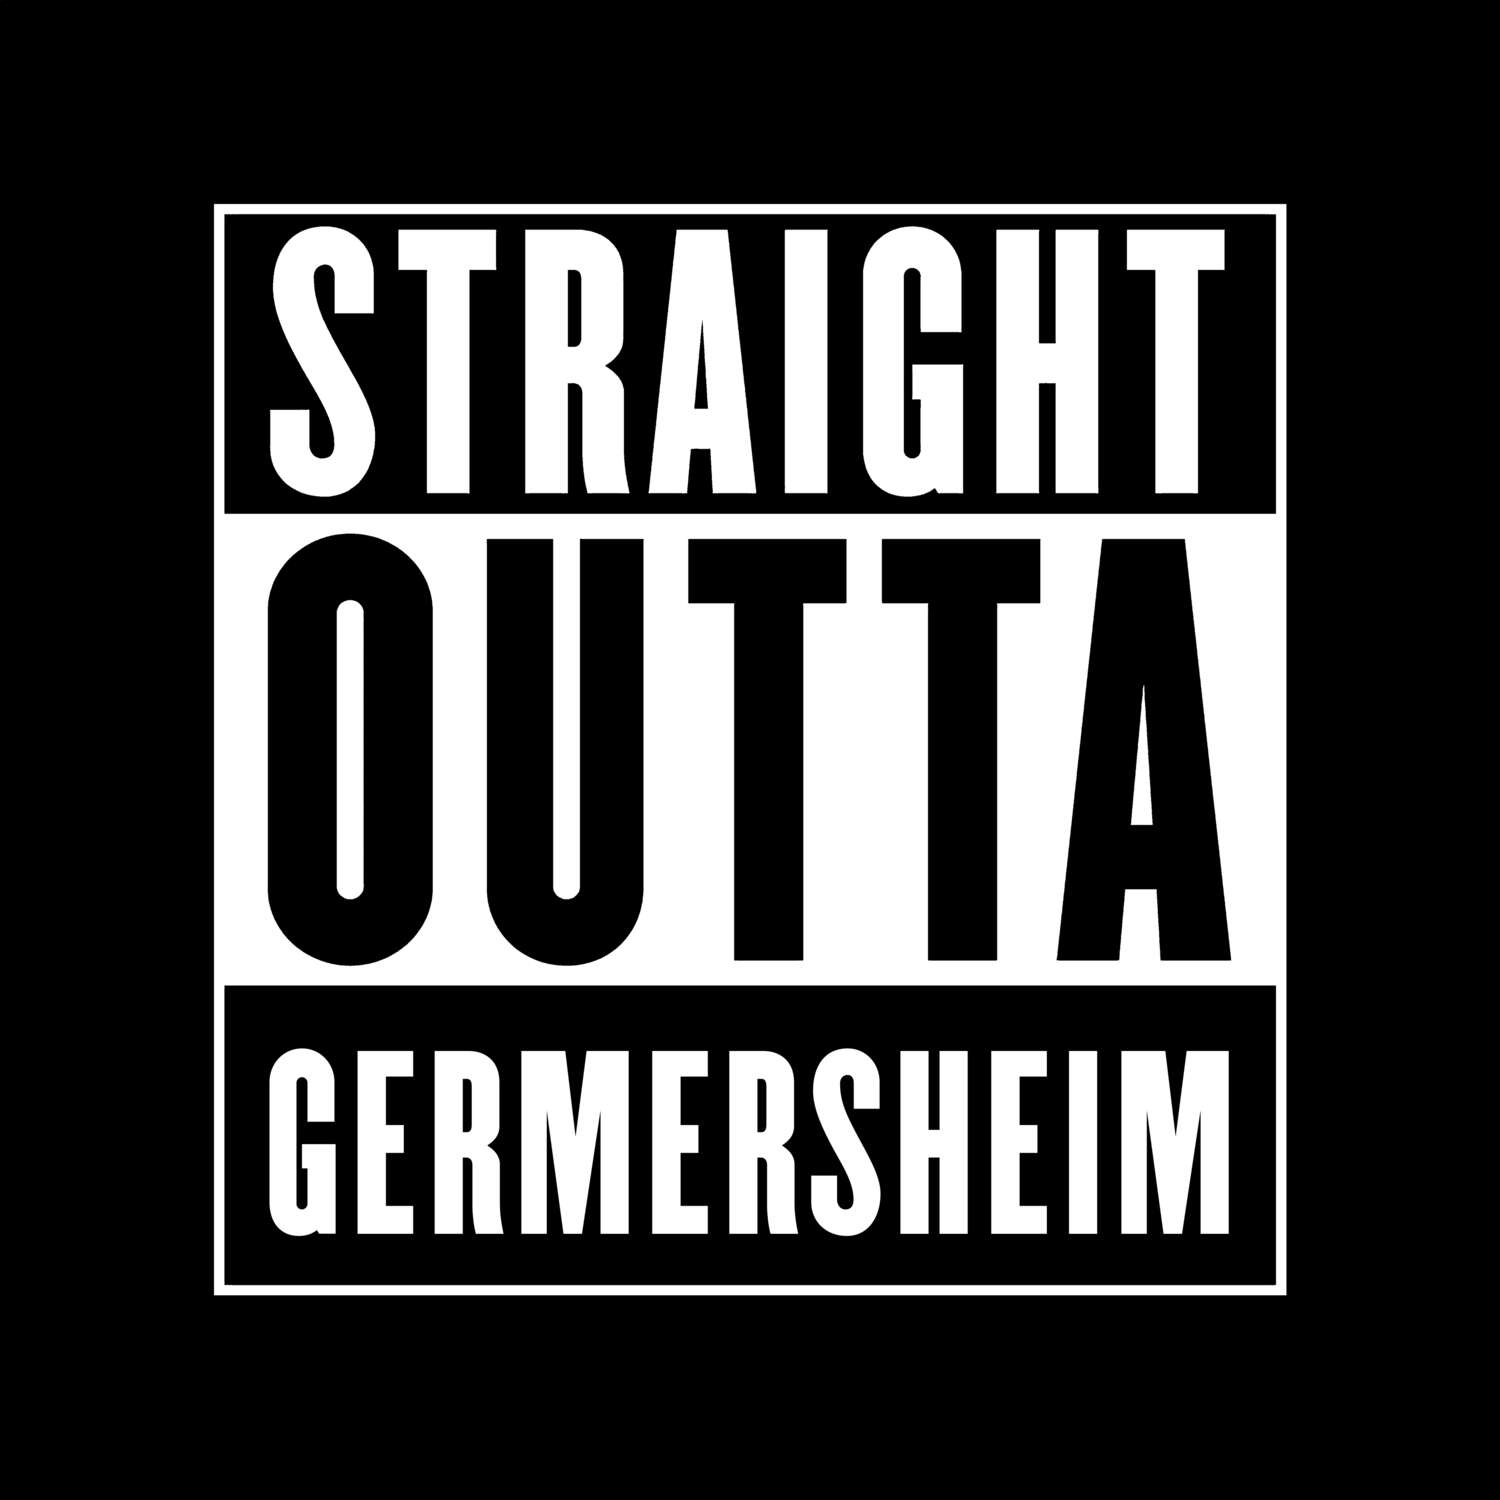 Germersheim T-Shirt »Straight Outta«